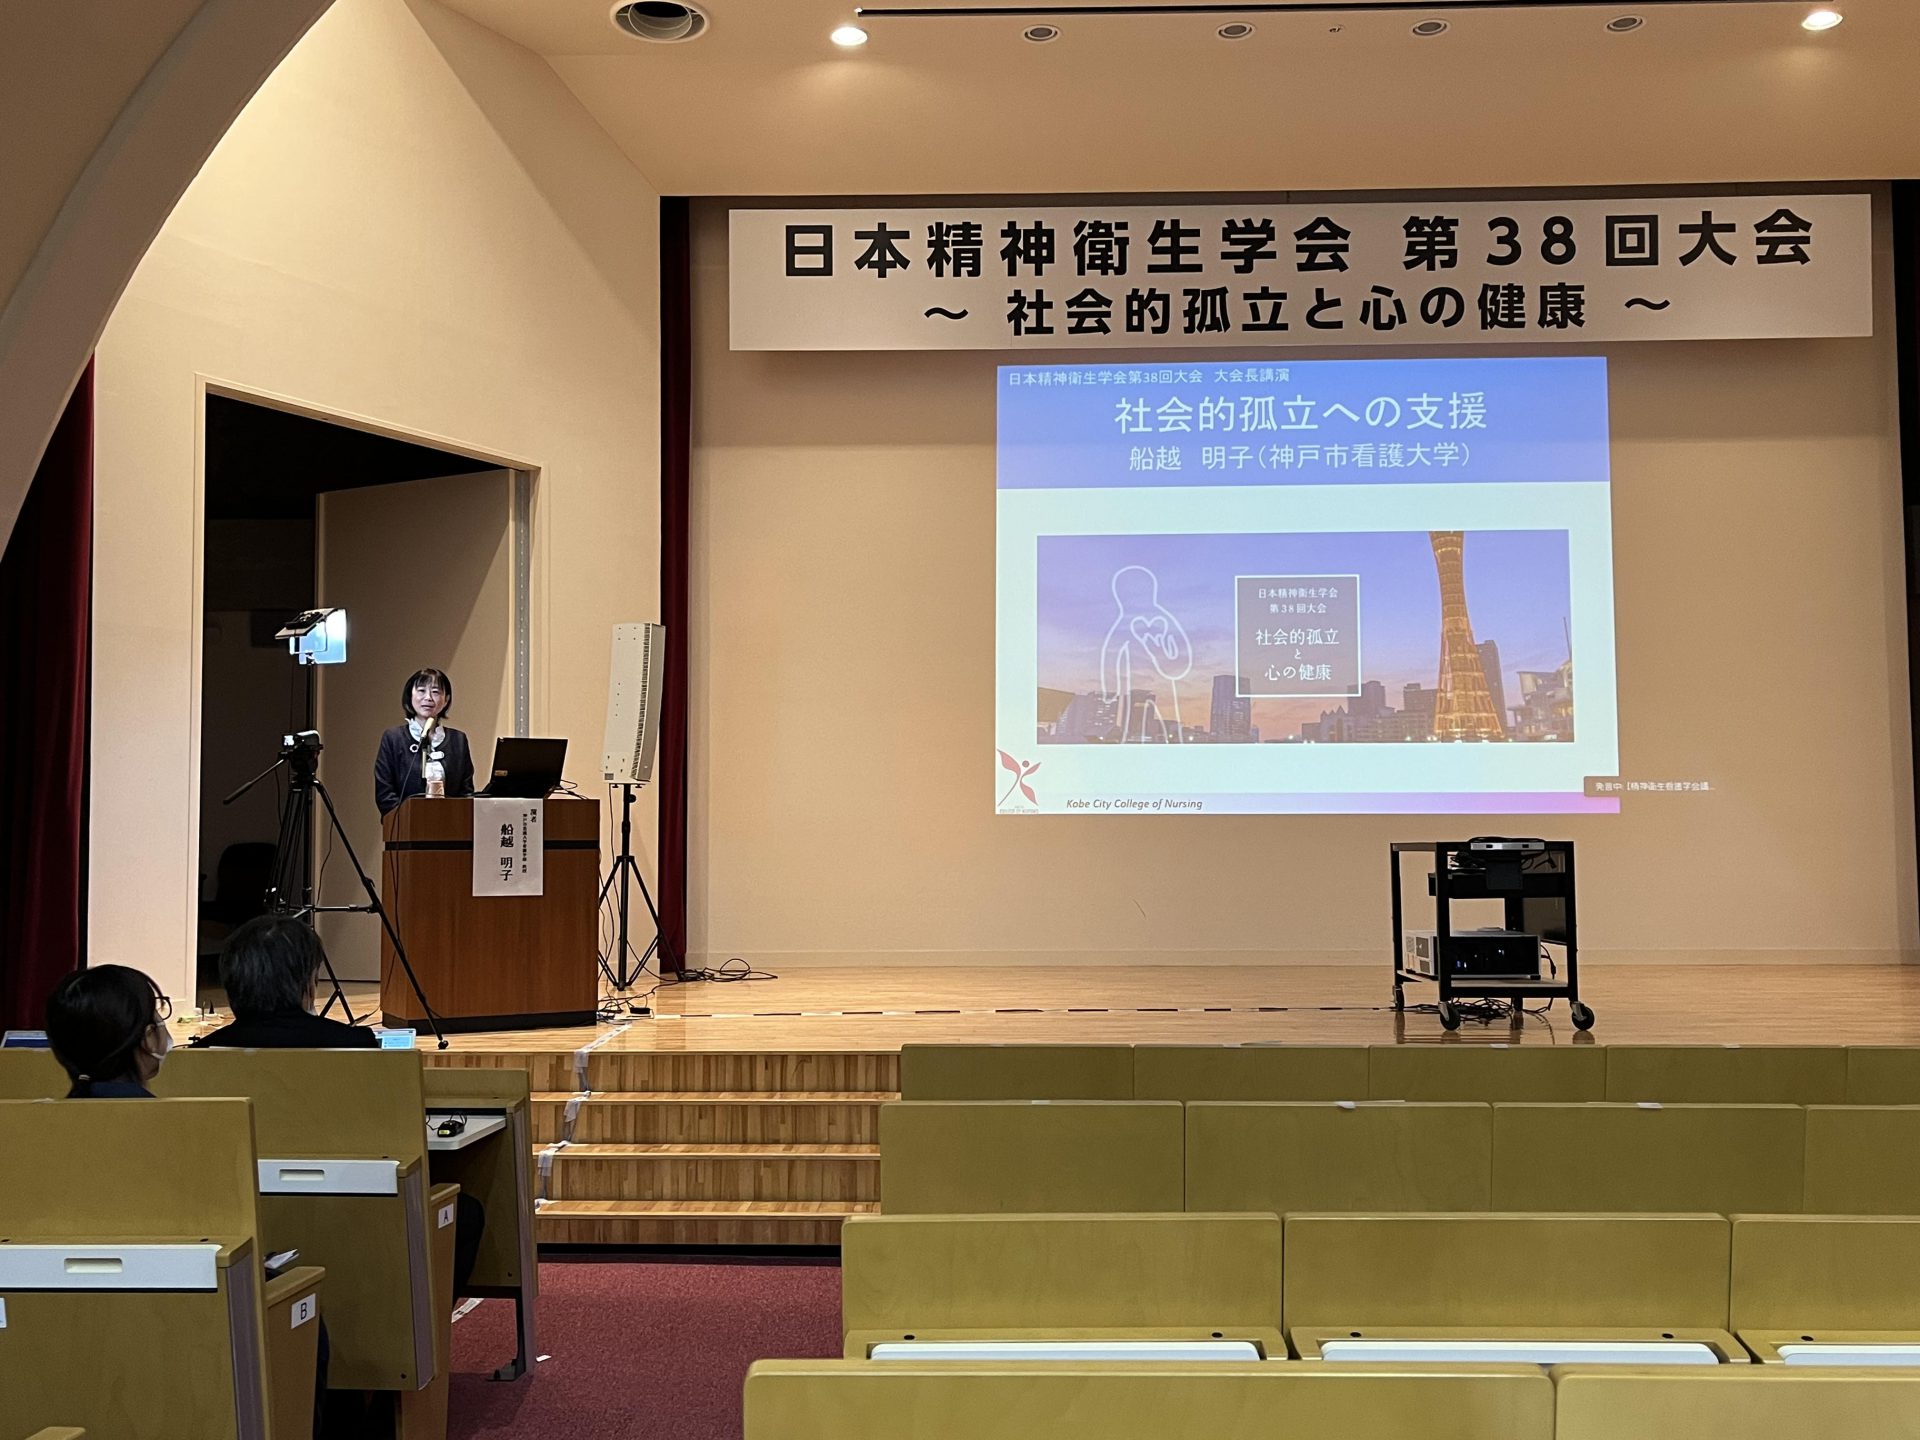 日本精神衛生学会第38回大会を本学にて開催しました